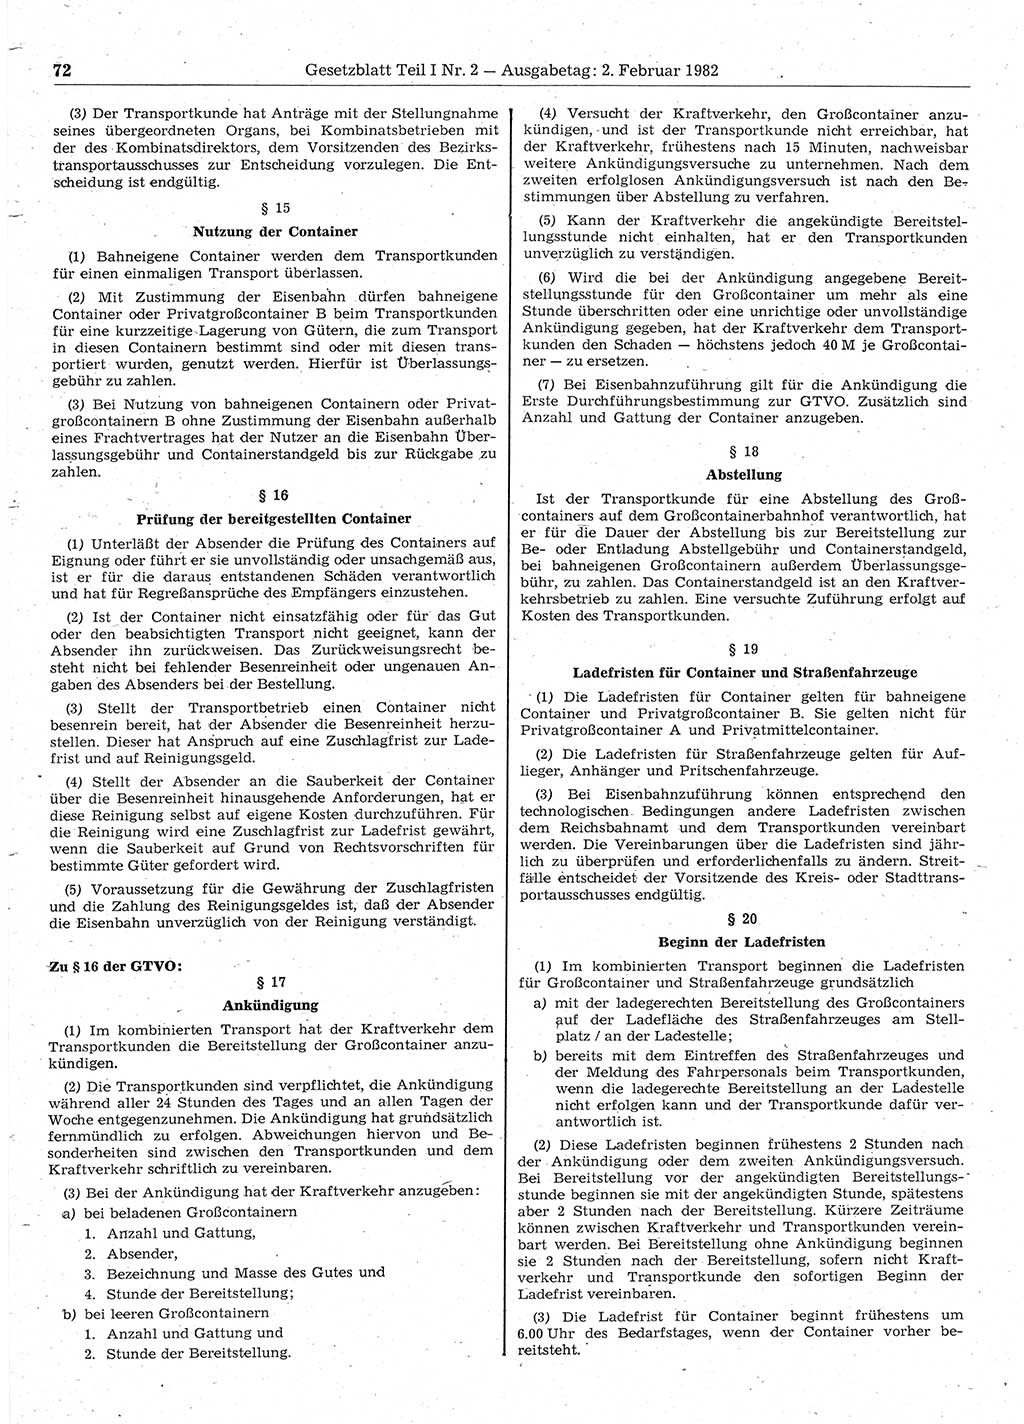 Gesetzblatt (GBl.) der Deutschen Demokratischen Republik (DDR) Teil Ⅰ 1982, Seite 72 (GBl. DDR Ⅰ 1982, S. 72)